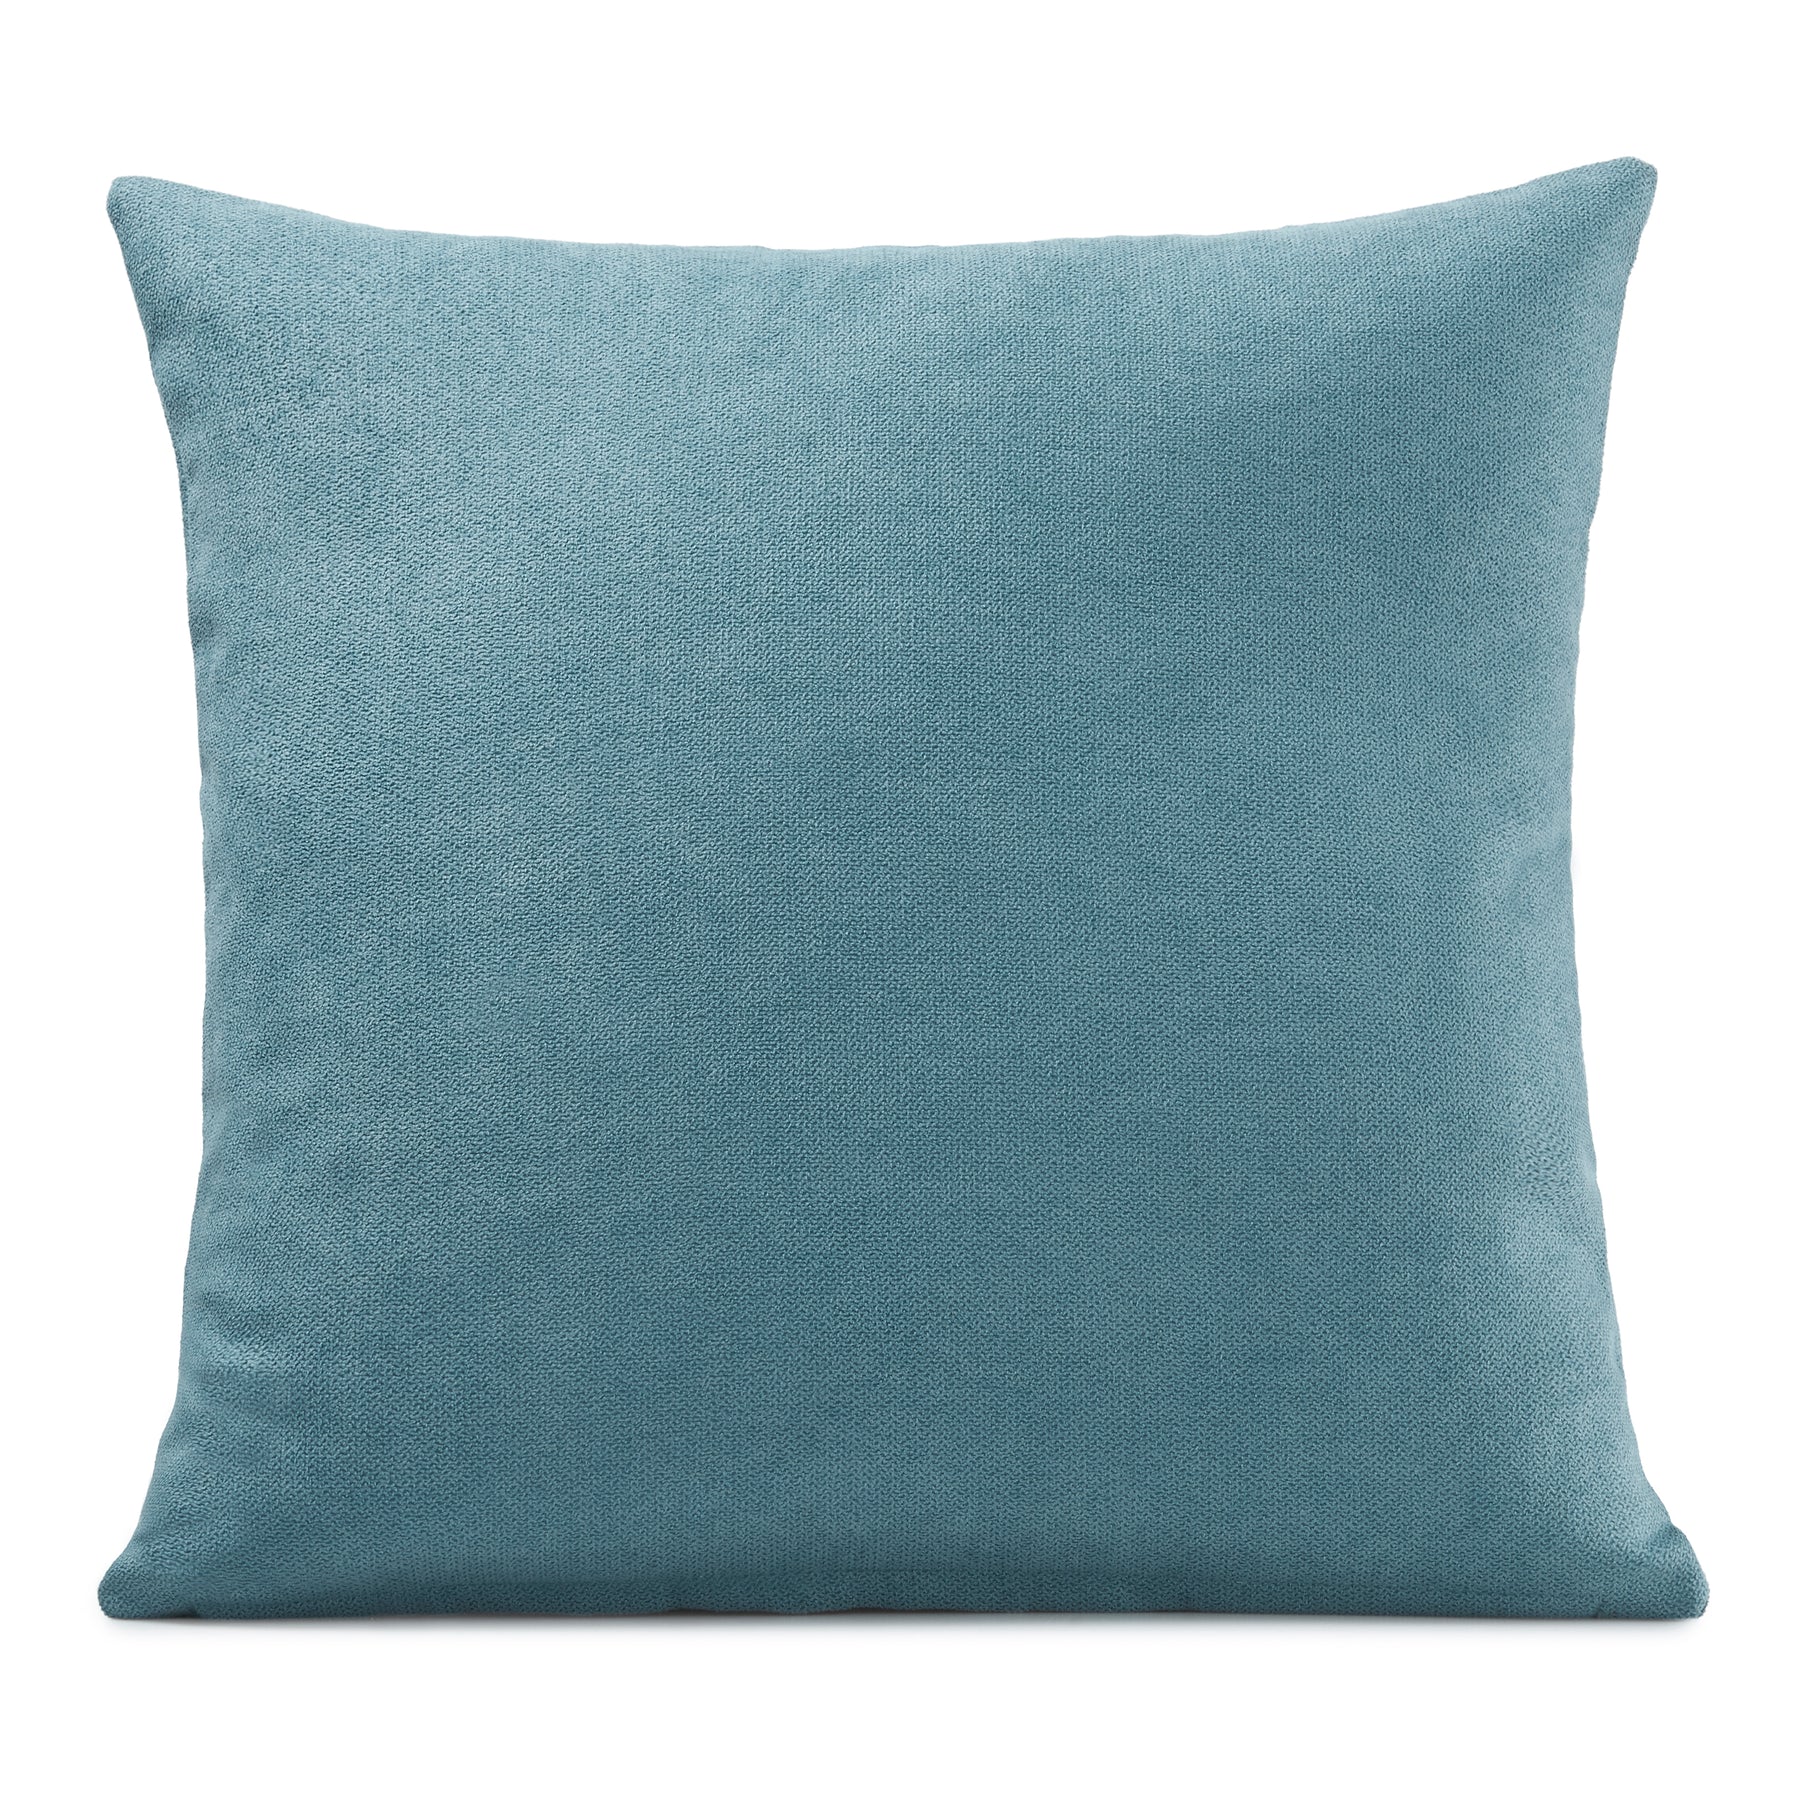 Velvet Chenille Filled Cushion 18x18 Teal